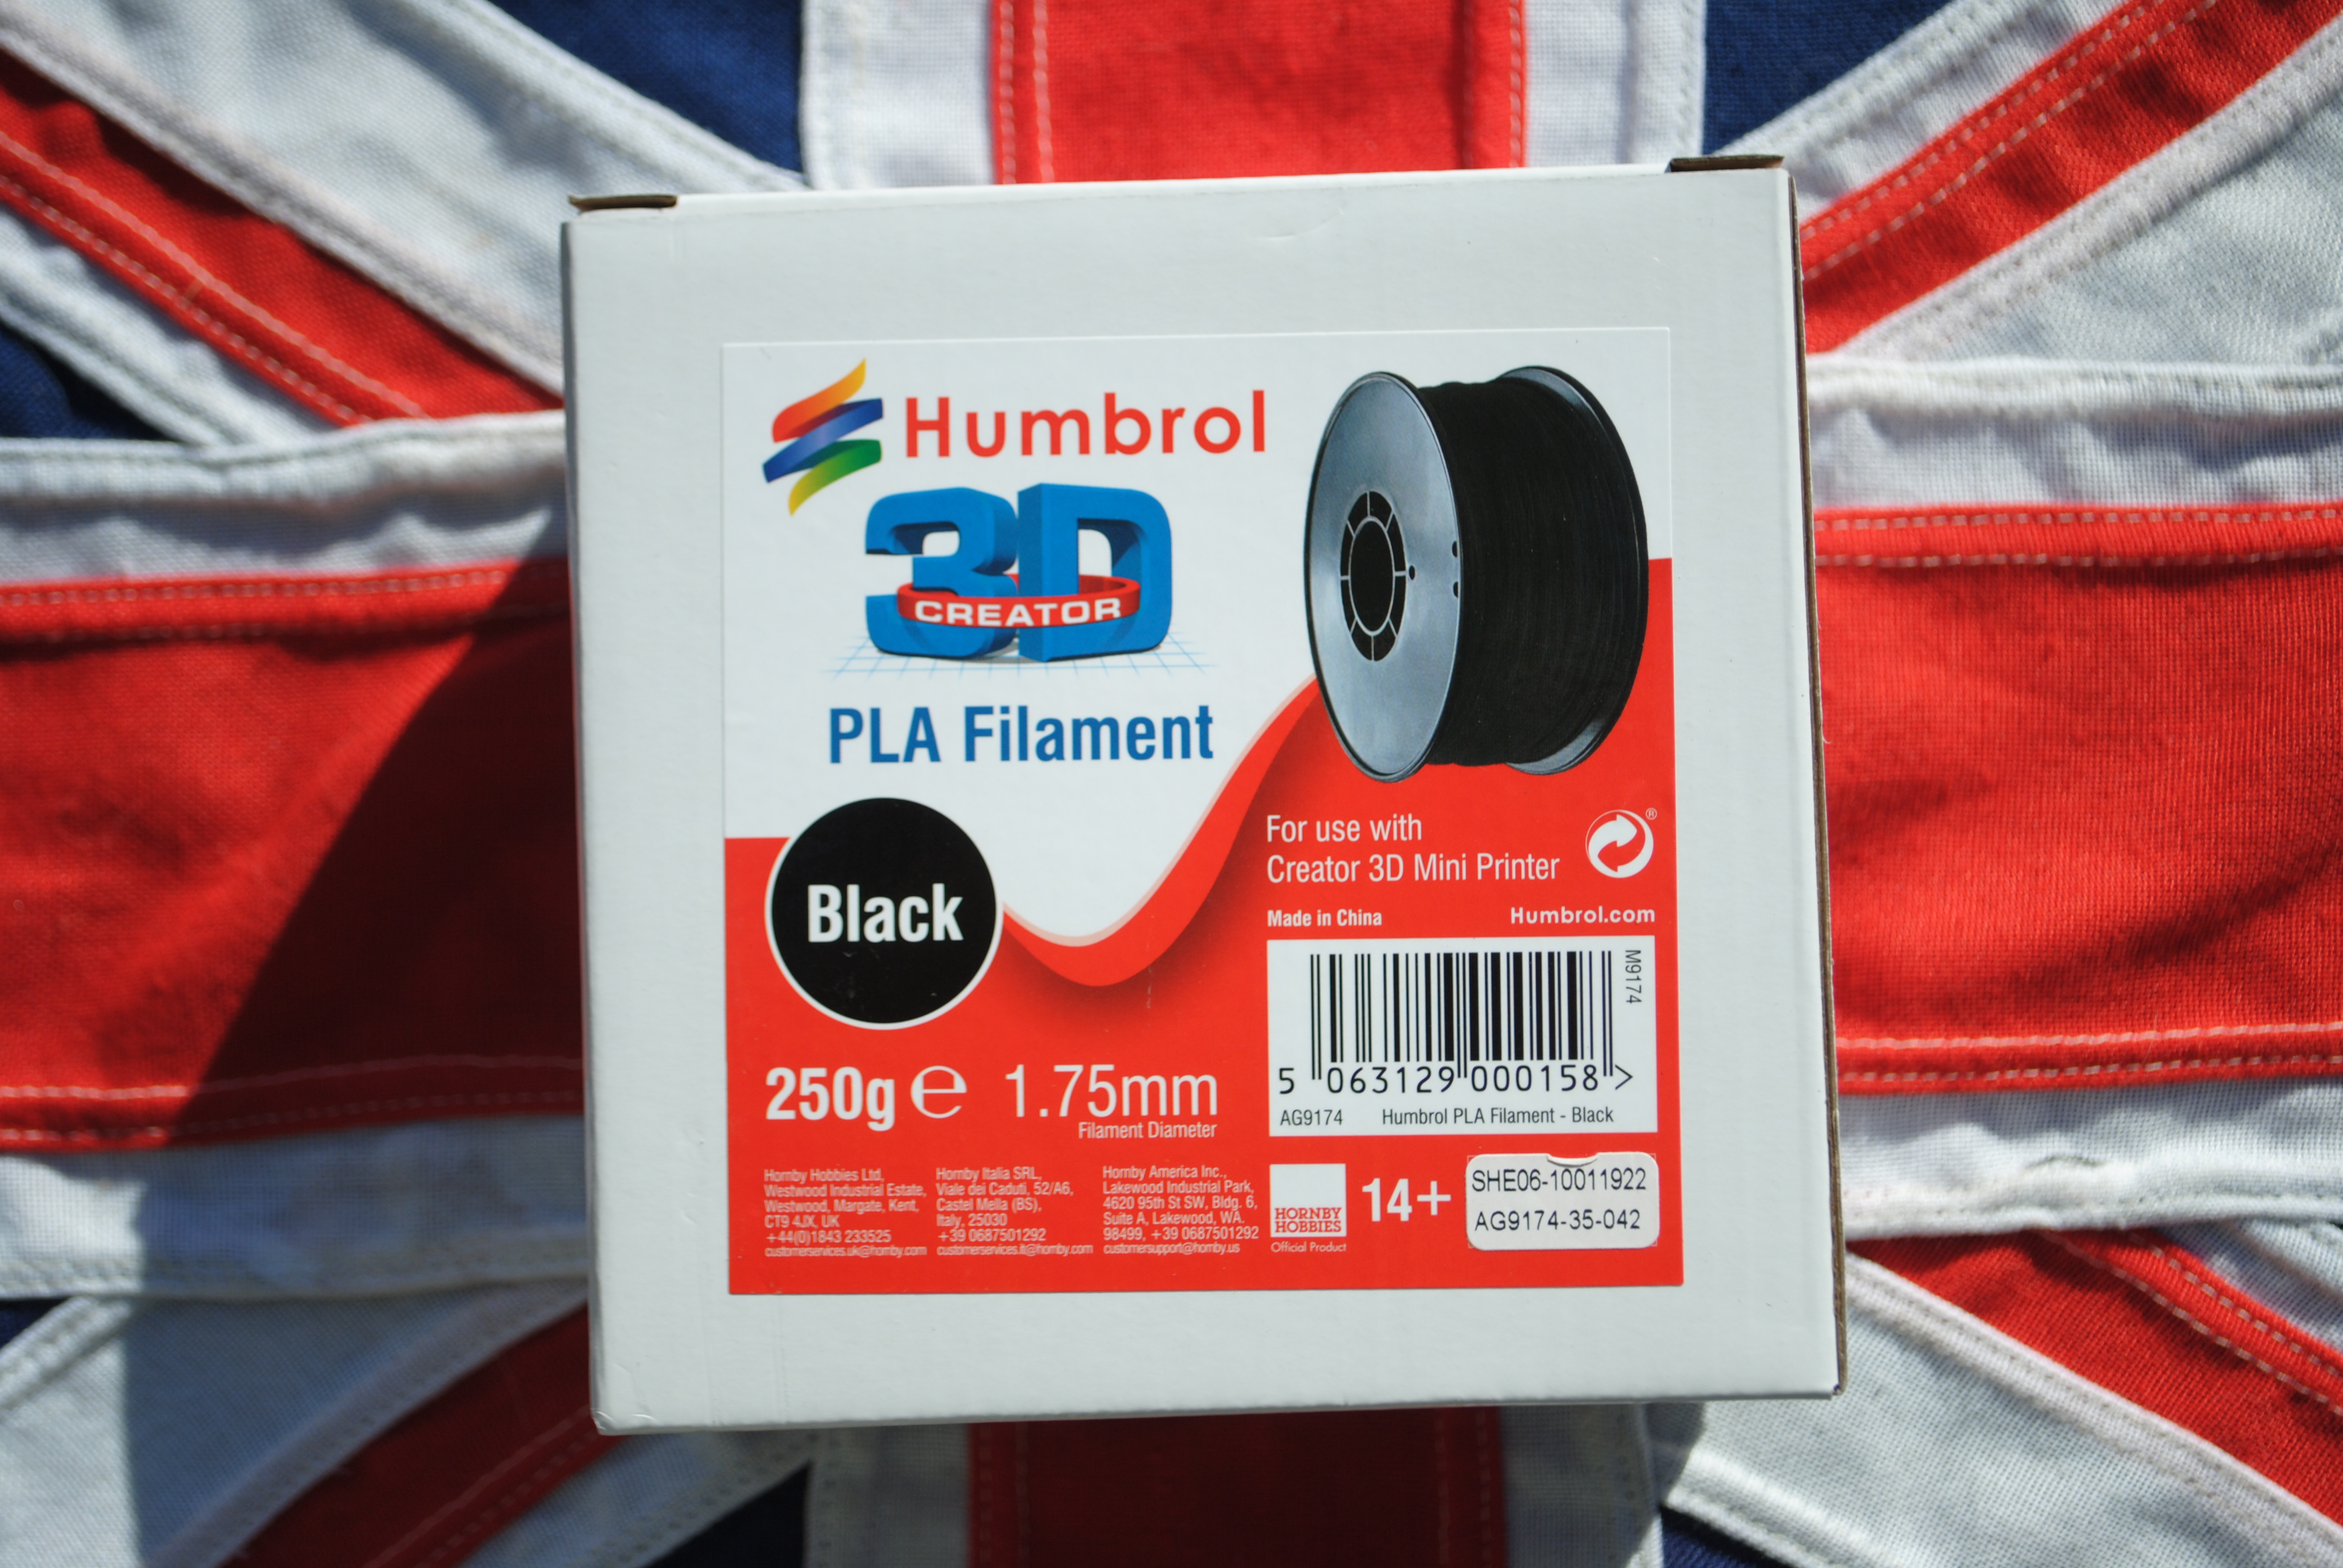 Humbrol AG9174 PLA Filament 'Black'